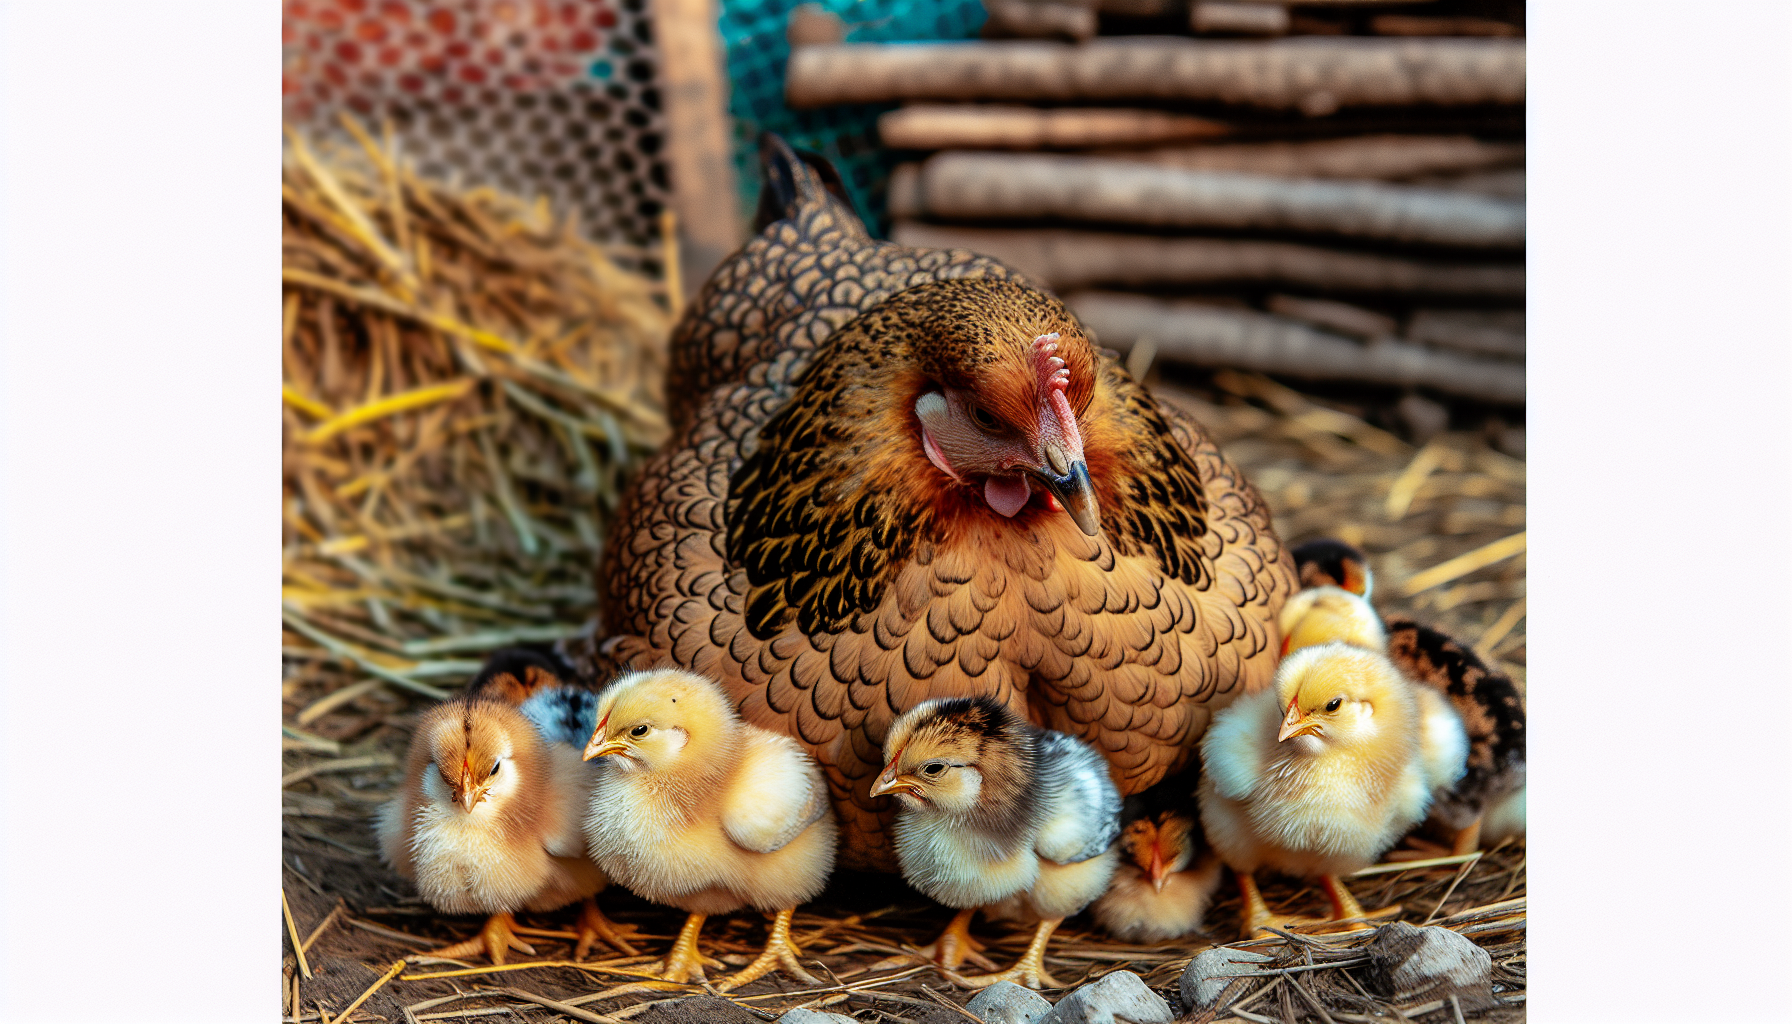 Mother hen nurturing chicks